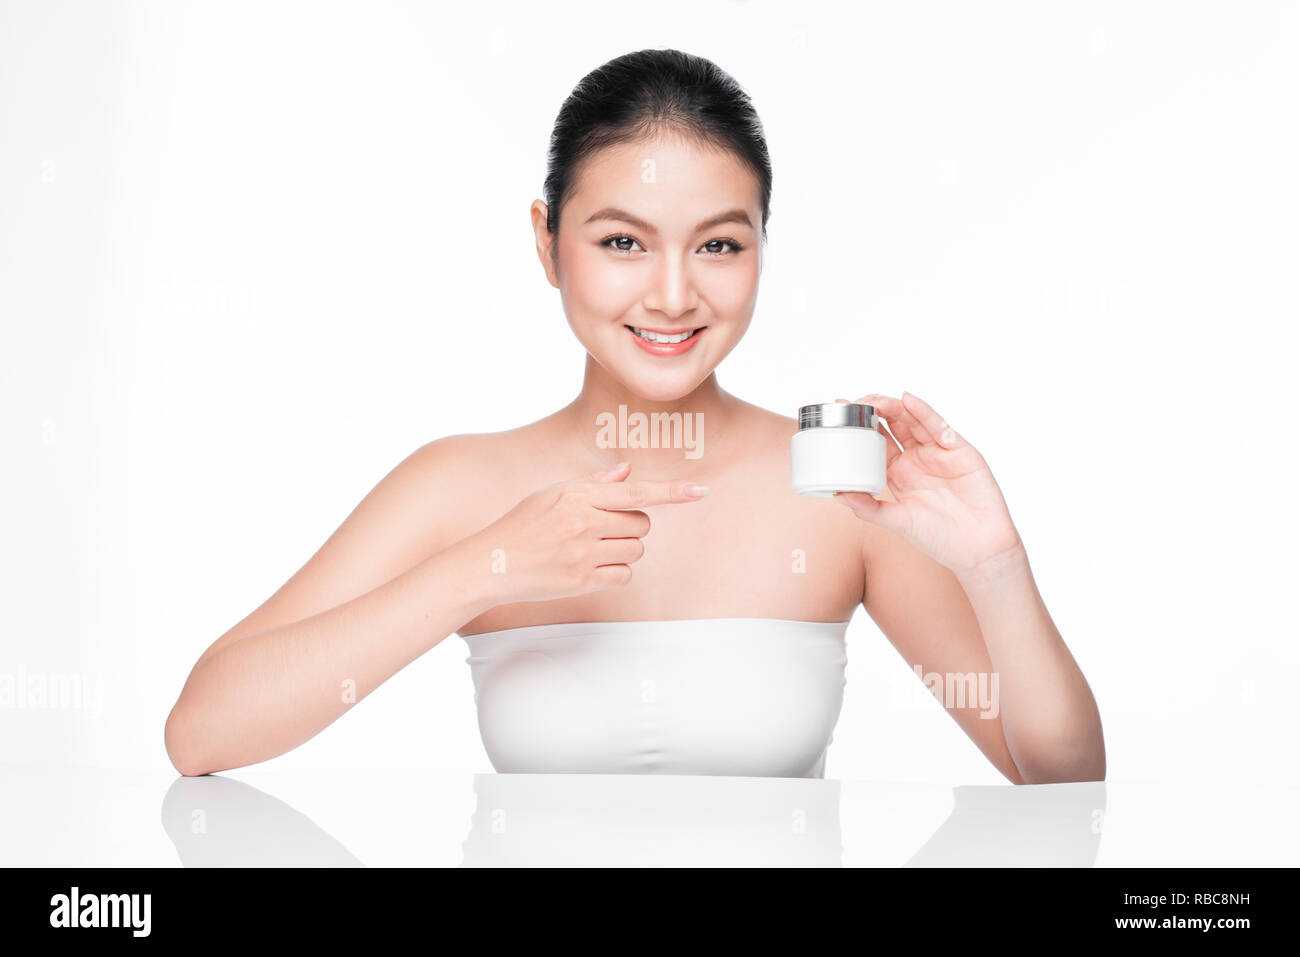 Beauty treatment. Asian woman holding serum moisturizing serum bottle Stock Photo